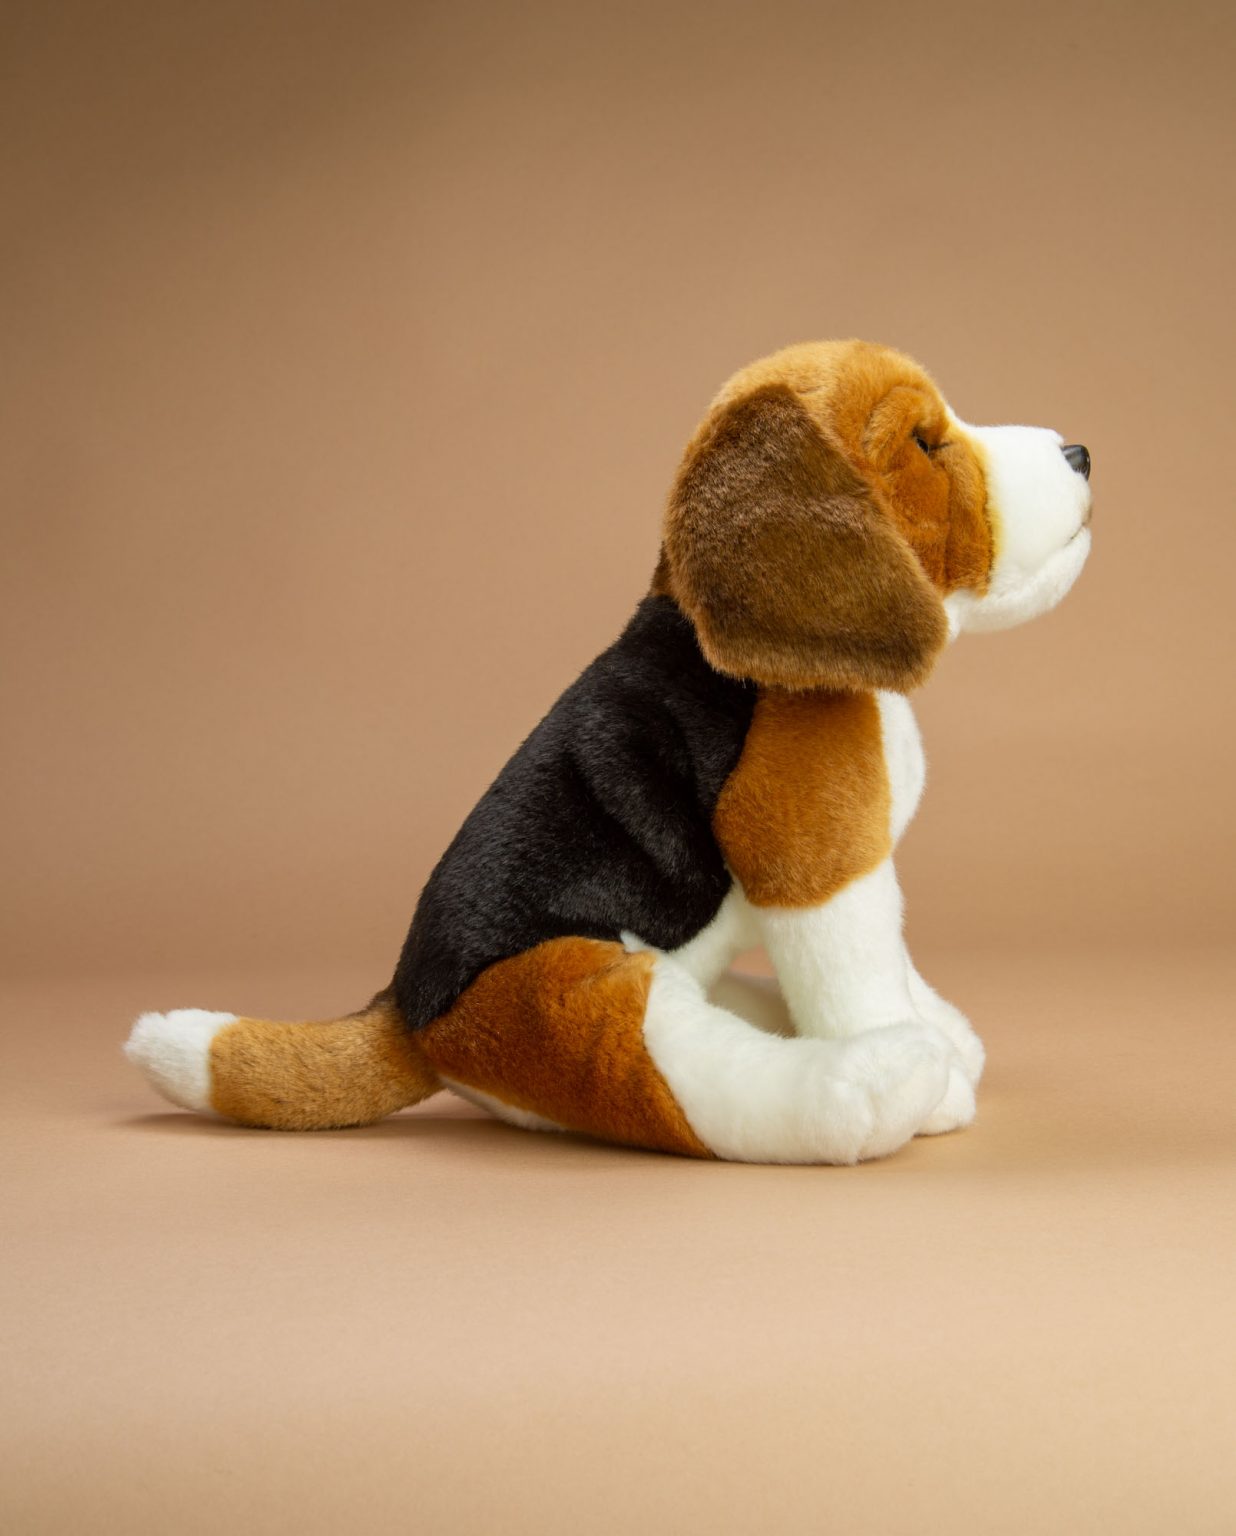 Beagle Dog soft toy gift - Send a Cuddly